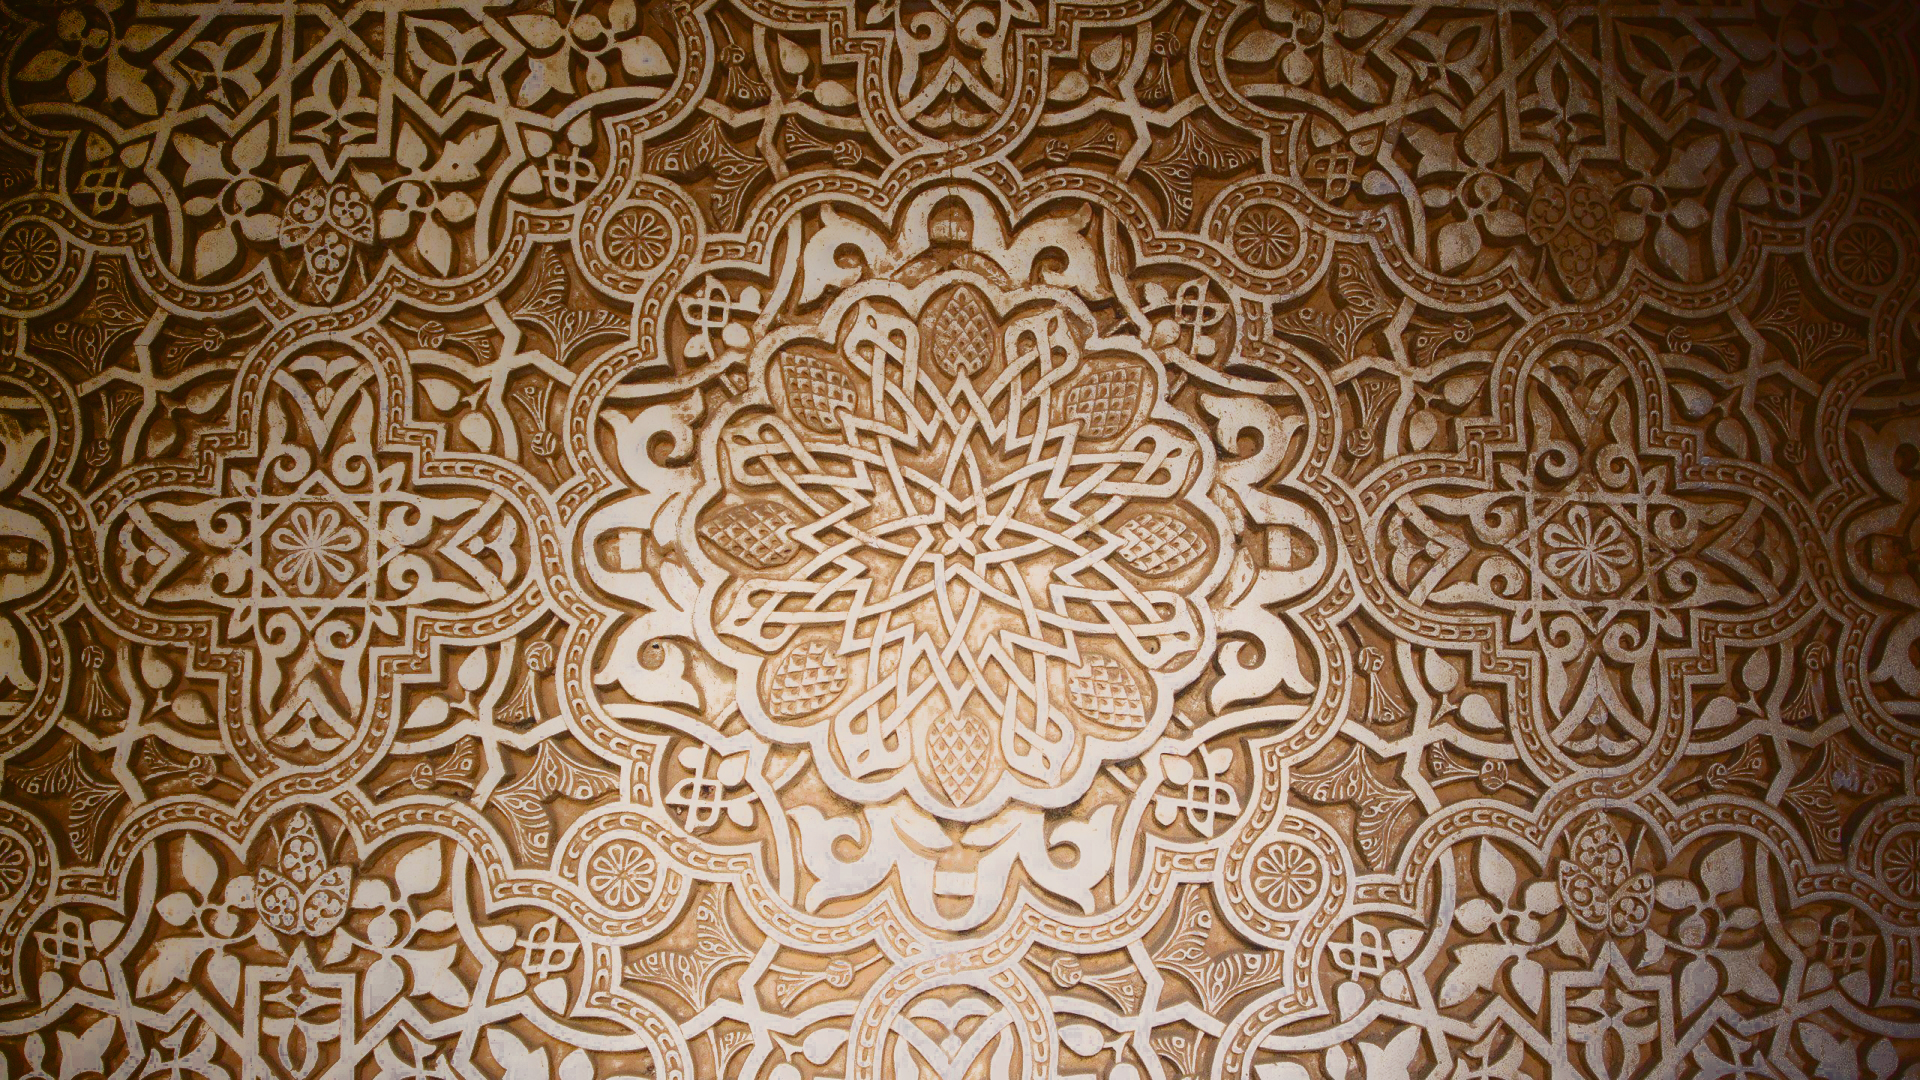 Dark Pattern Stars Design Mosaic Arabian Islamic - [1920 X ... - 1920 x 1080 jpeg 2286kB